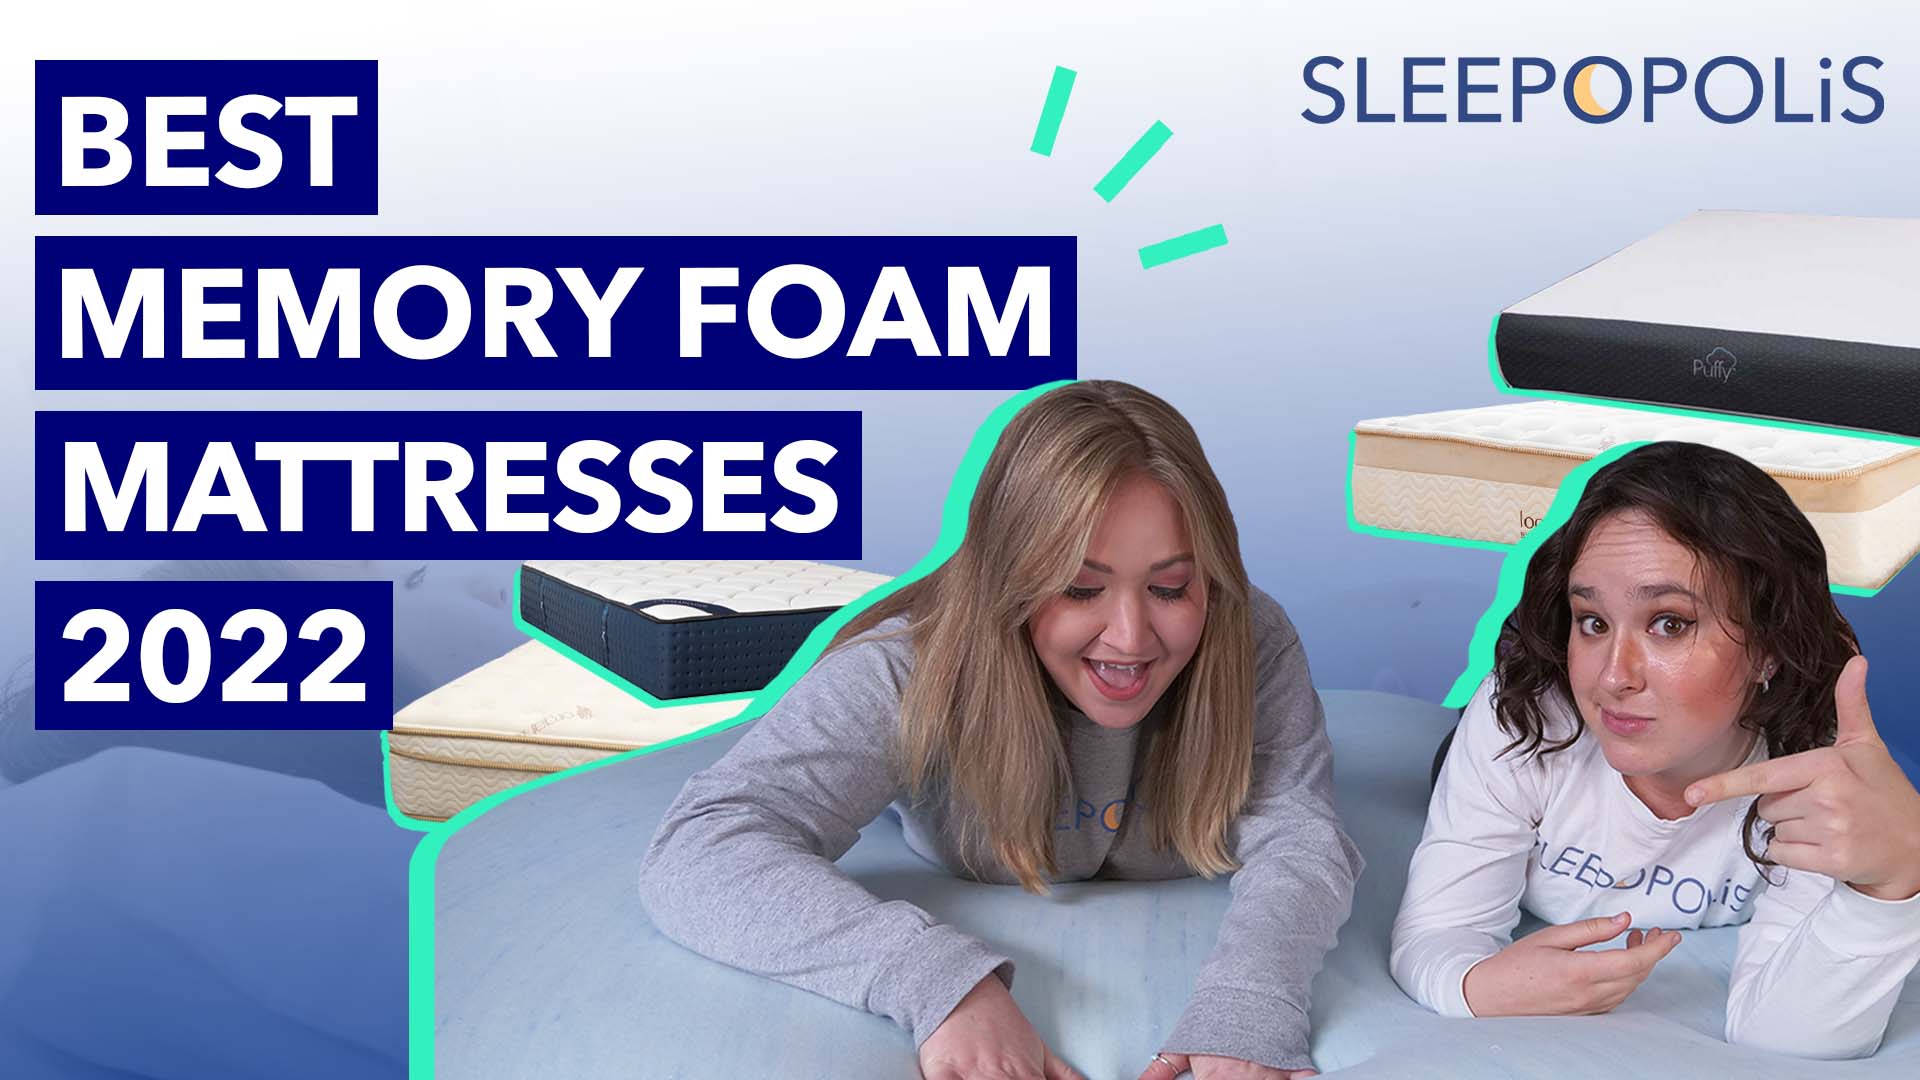 Best Memory Foam Mattress 2022 Sleepopolis Top Picks